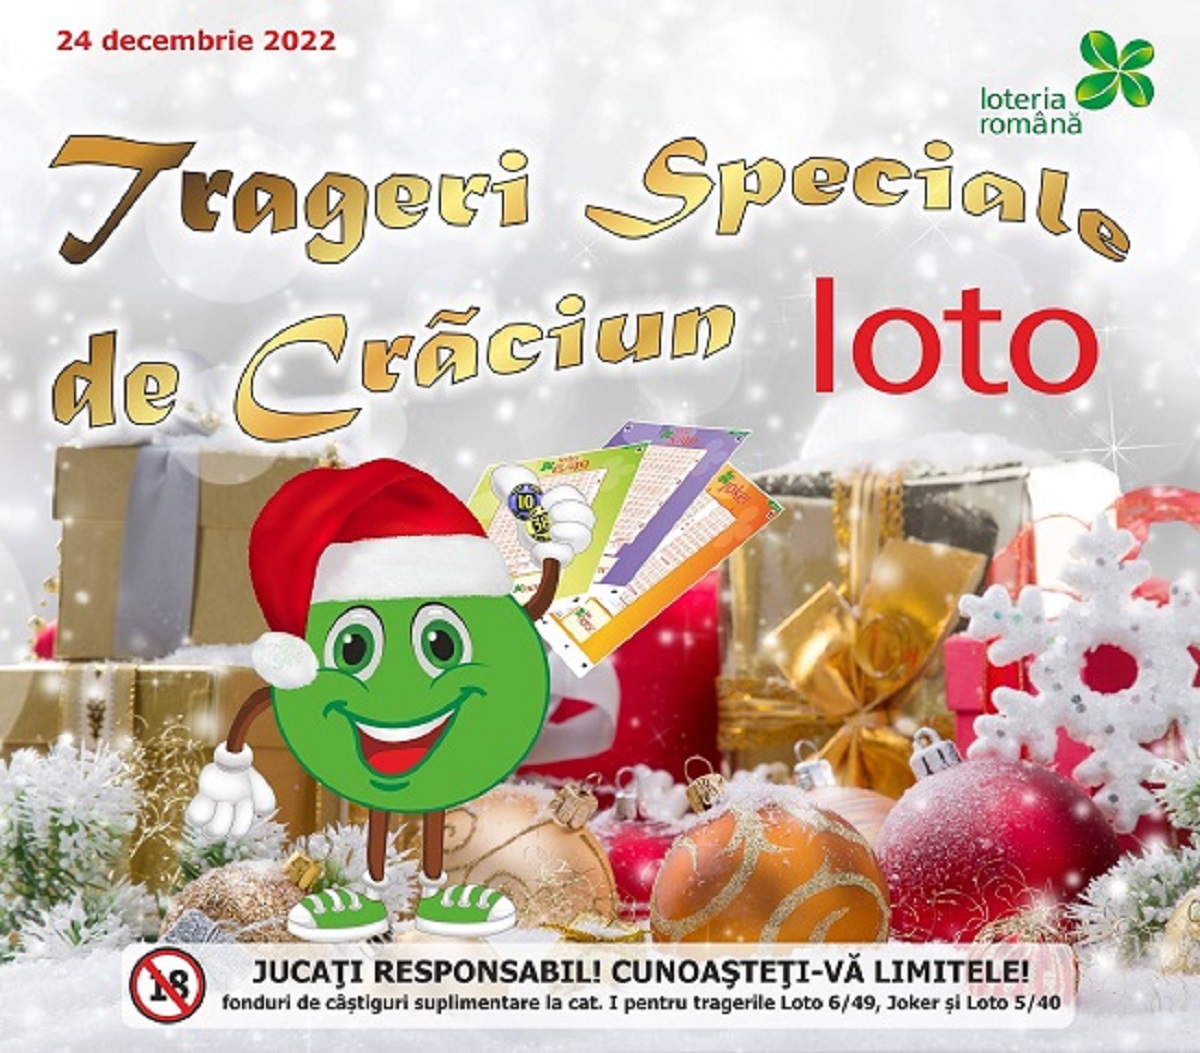 Trageri Speciale Loto de Crăciun, organizate sâmbătă de Loteria Română